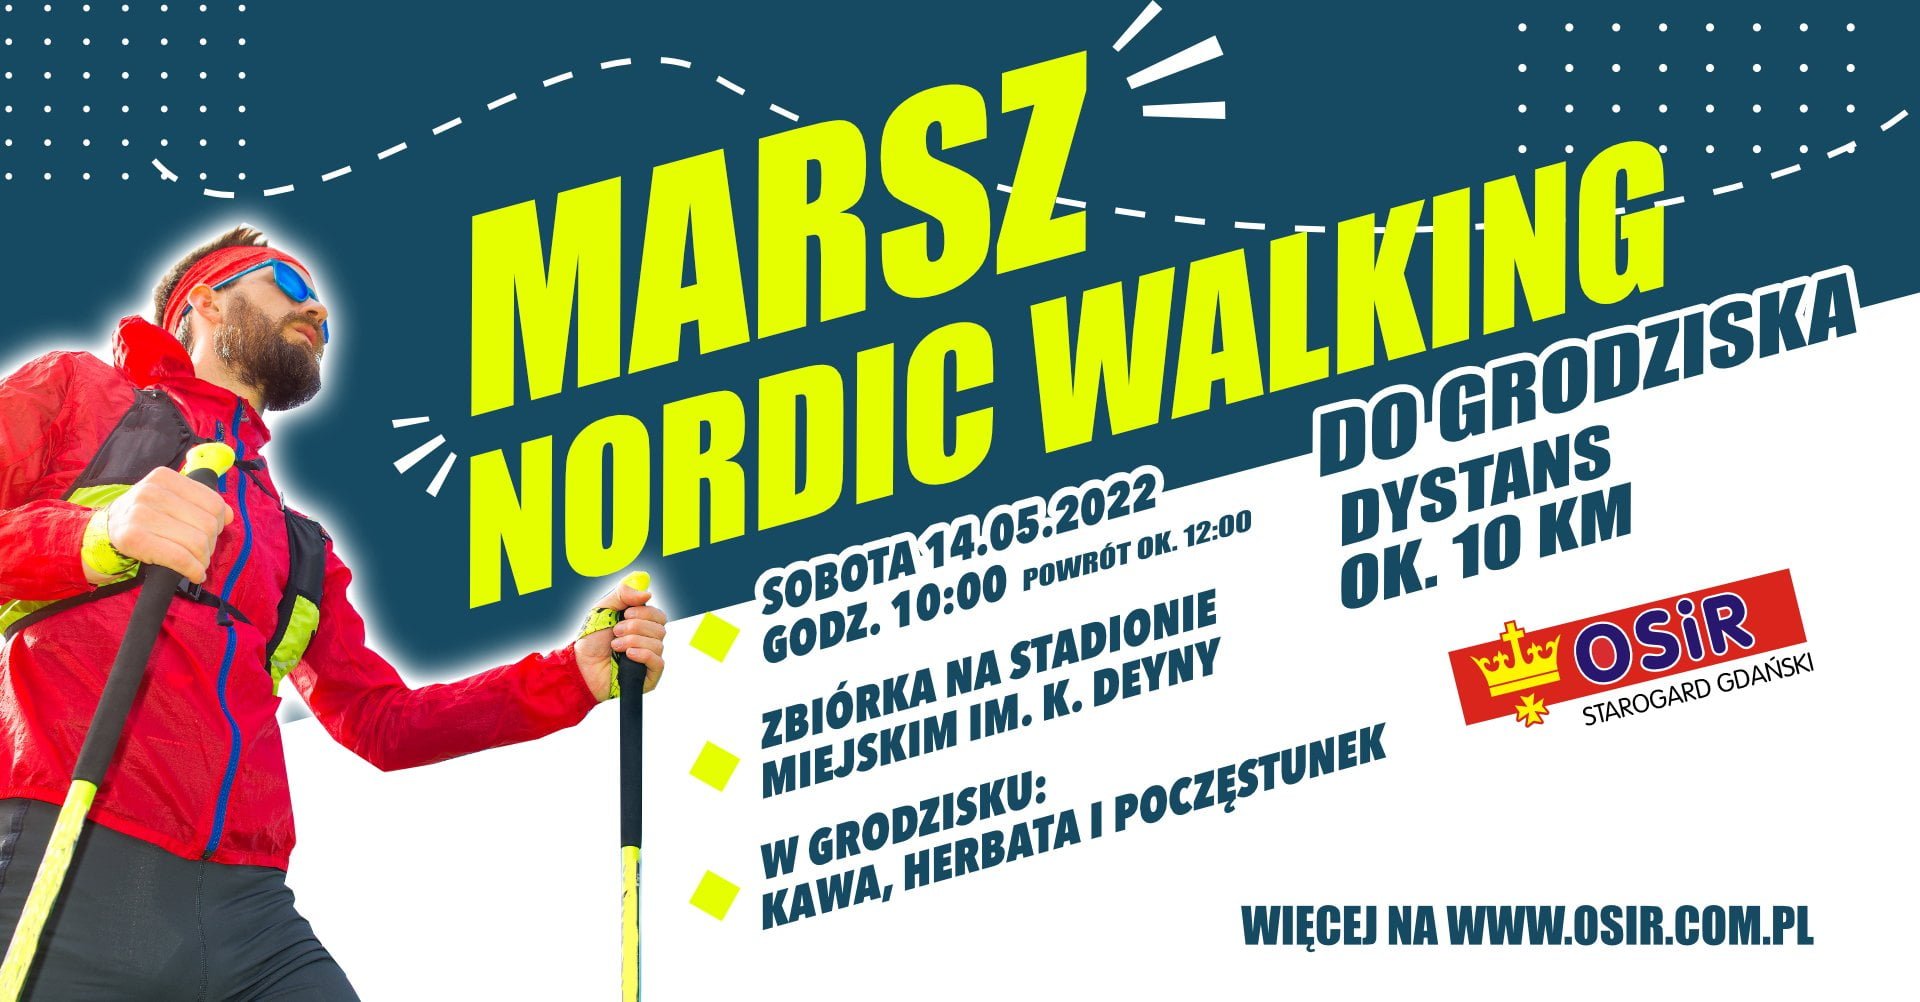 ZAPISY NA MARSZ NORDIC WALKING – 14.05.2022